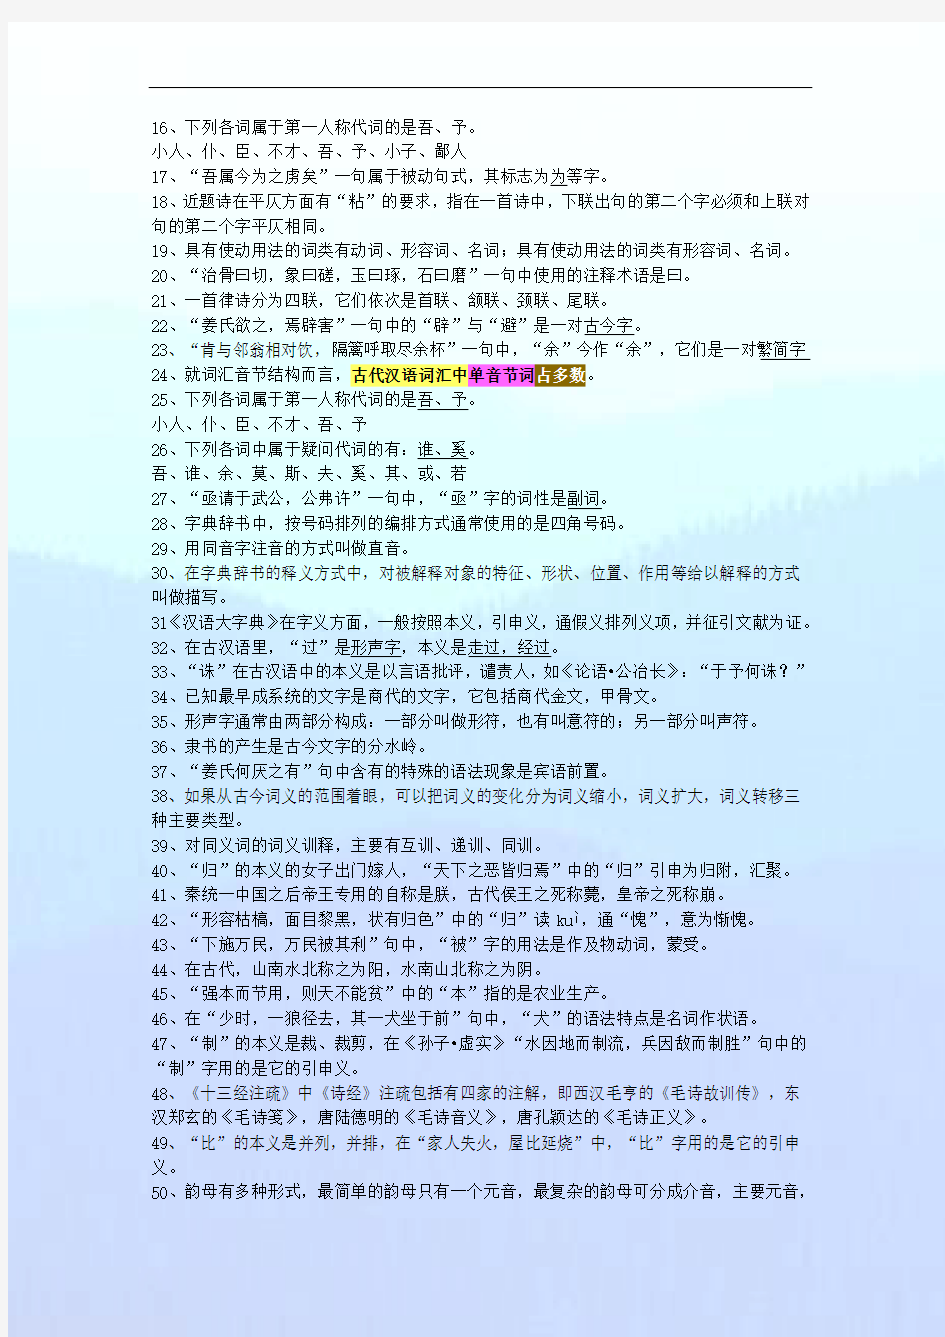 《古代汉语》完整复习整理笔记 十套试题答案